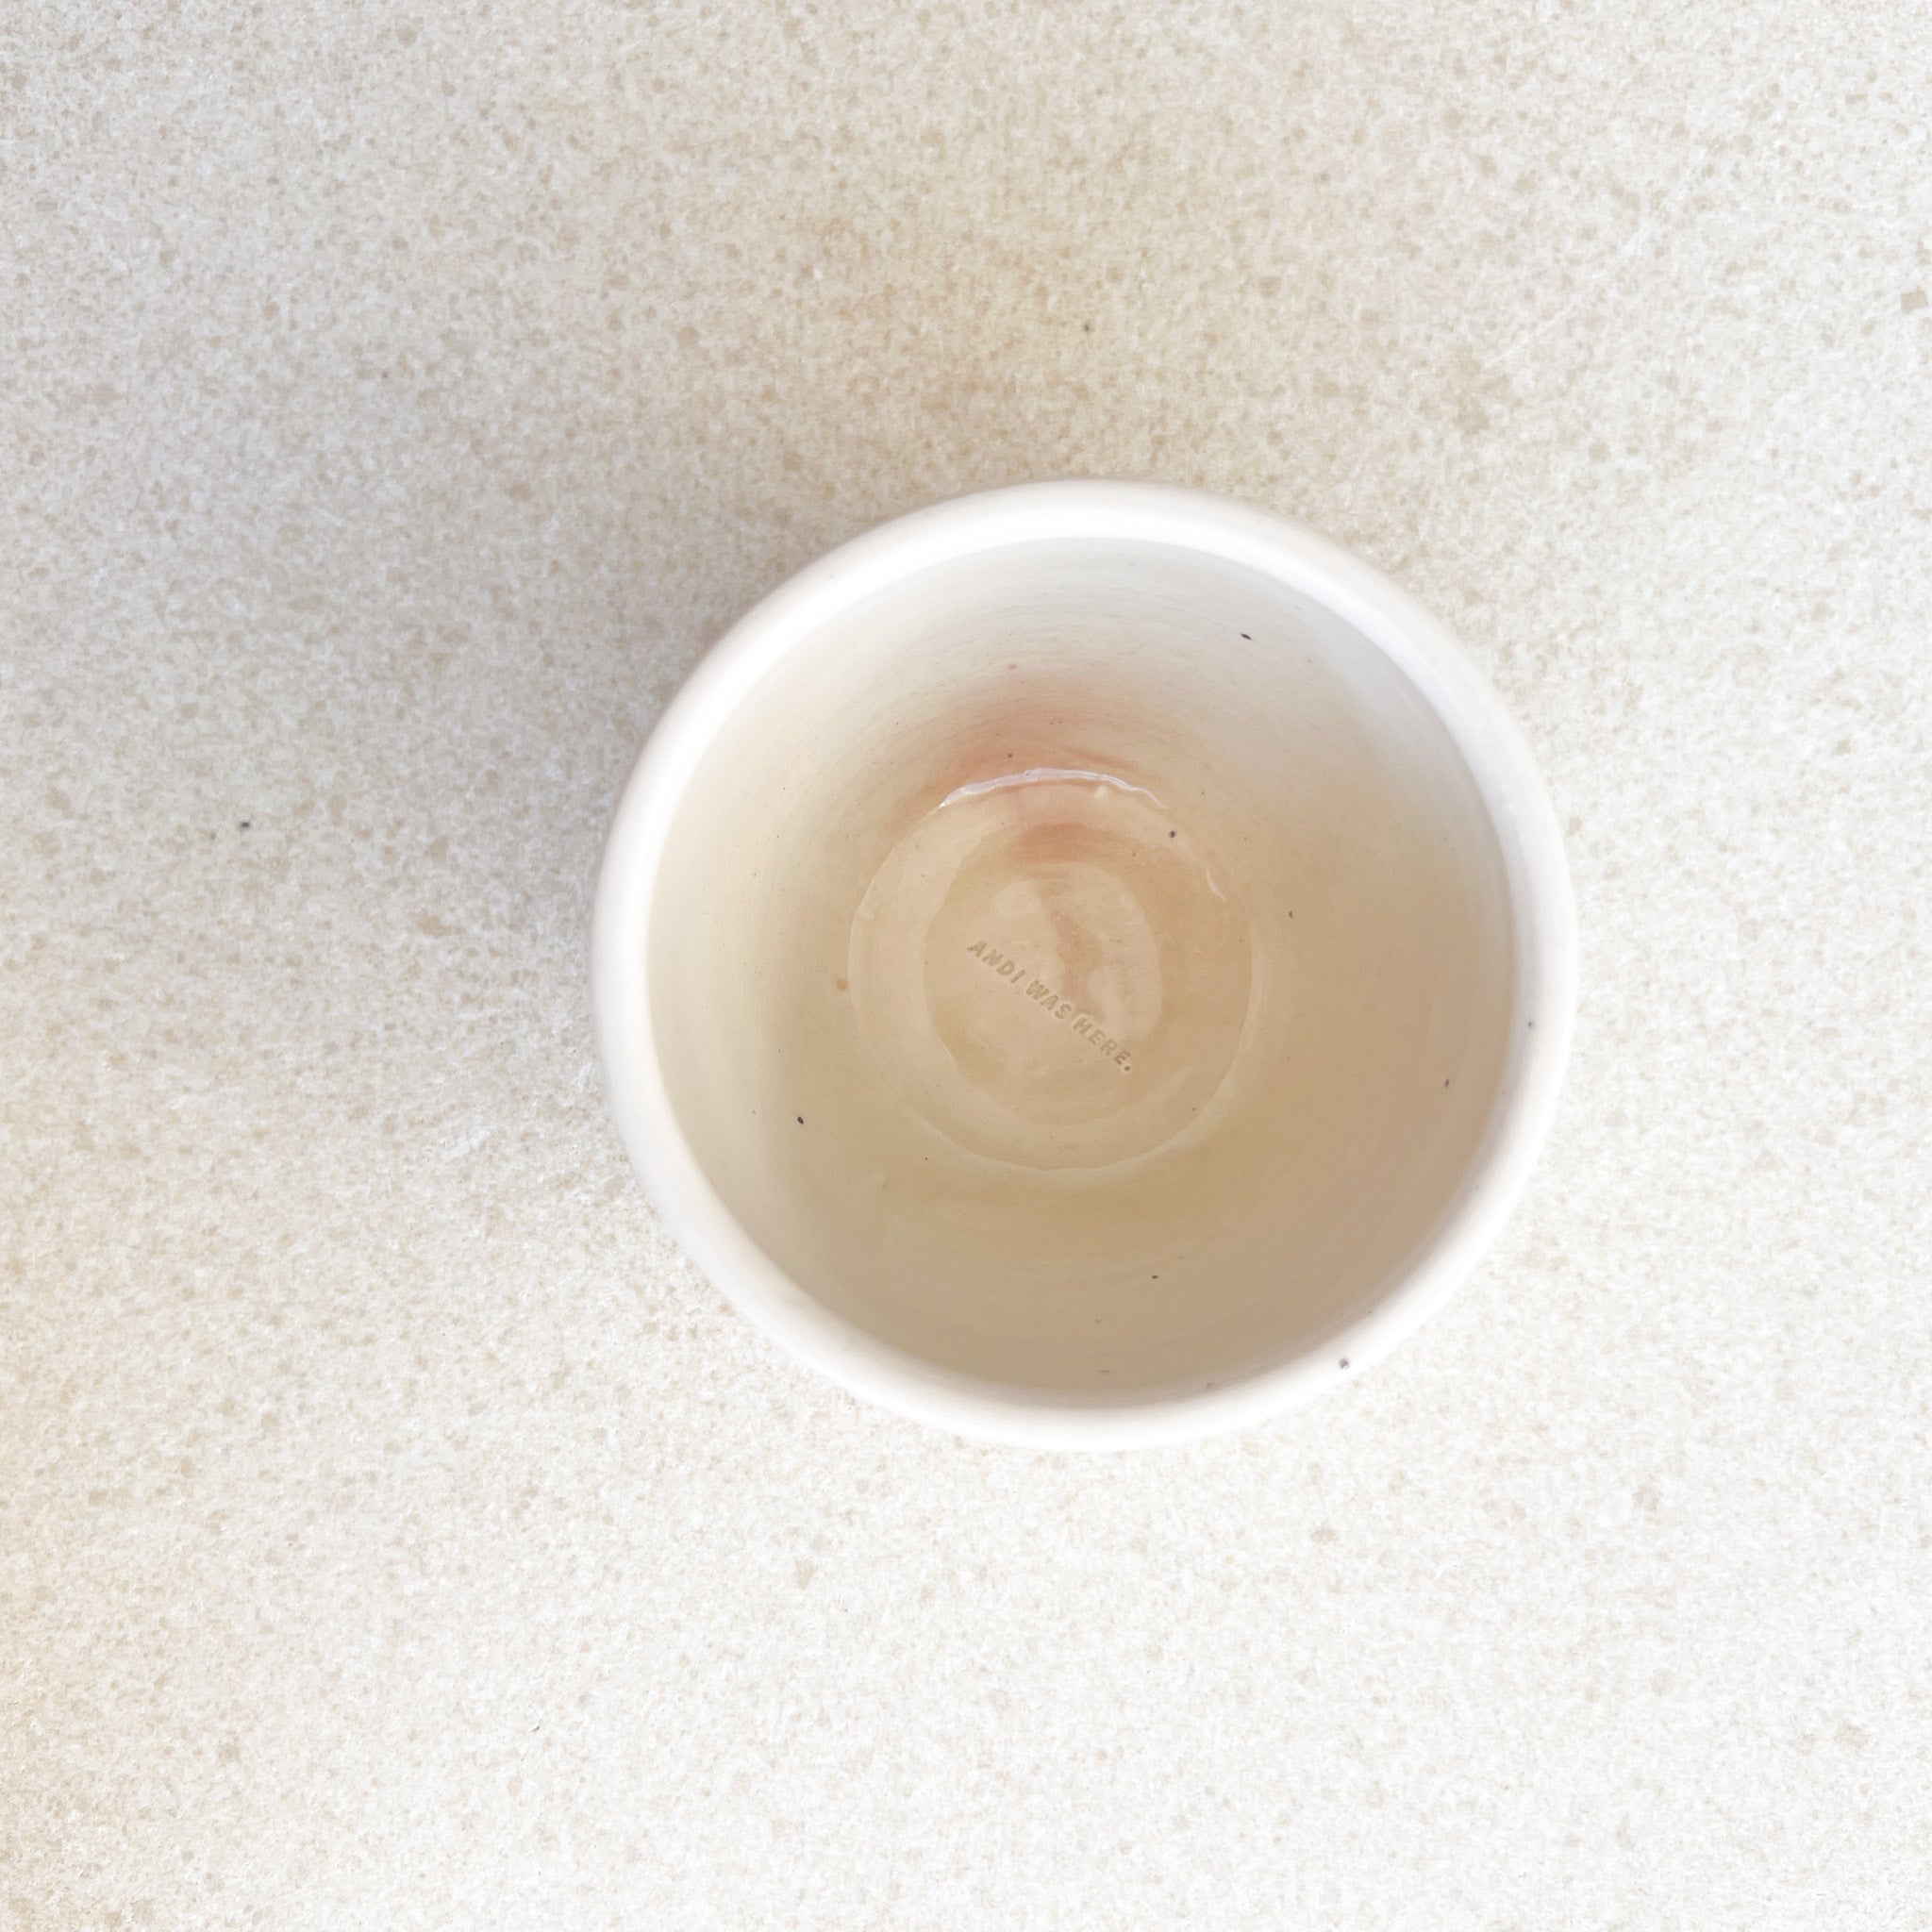 Cortado/Espresso Cup 5oz